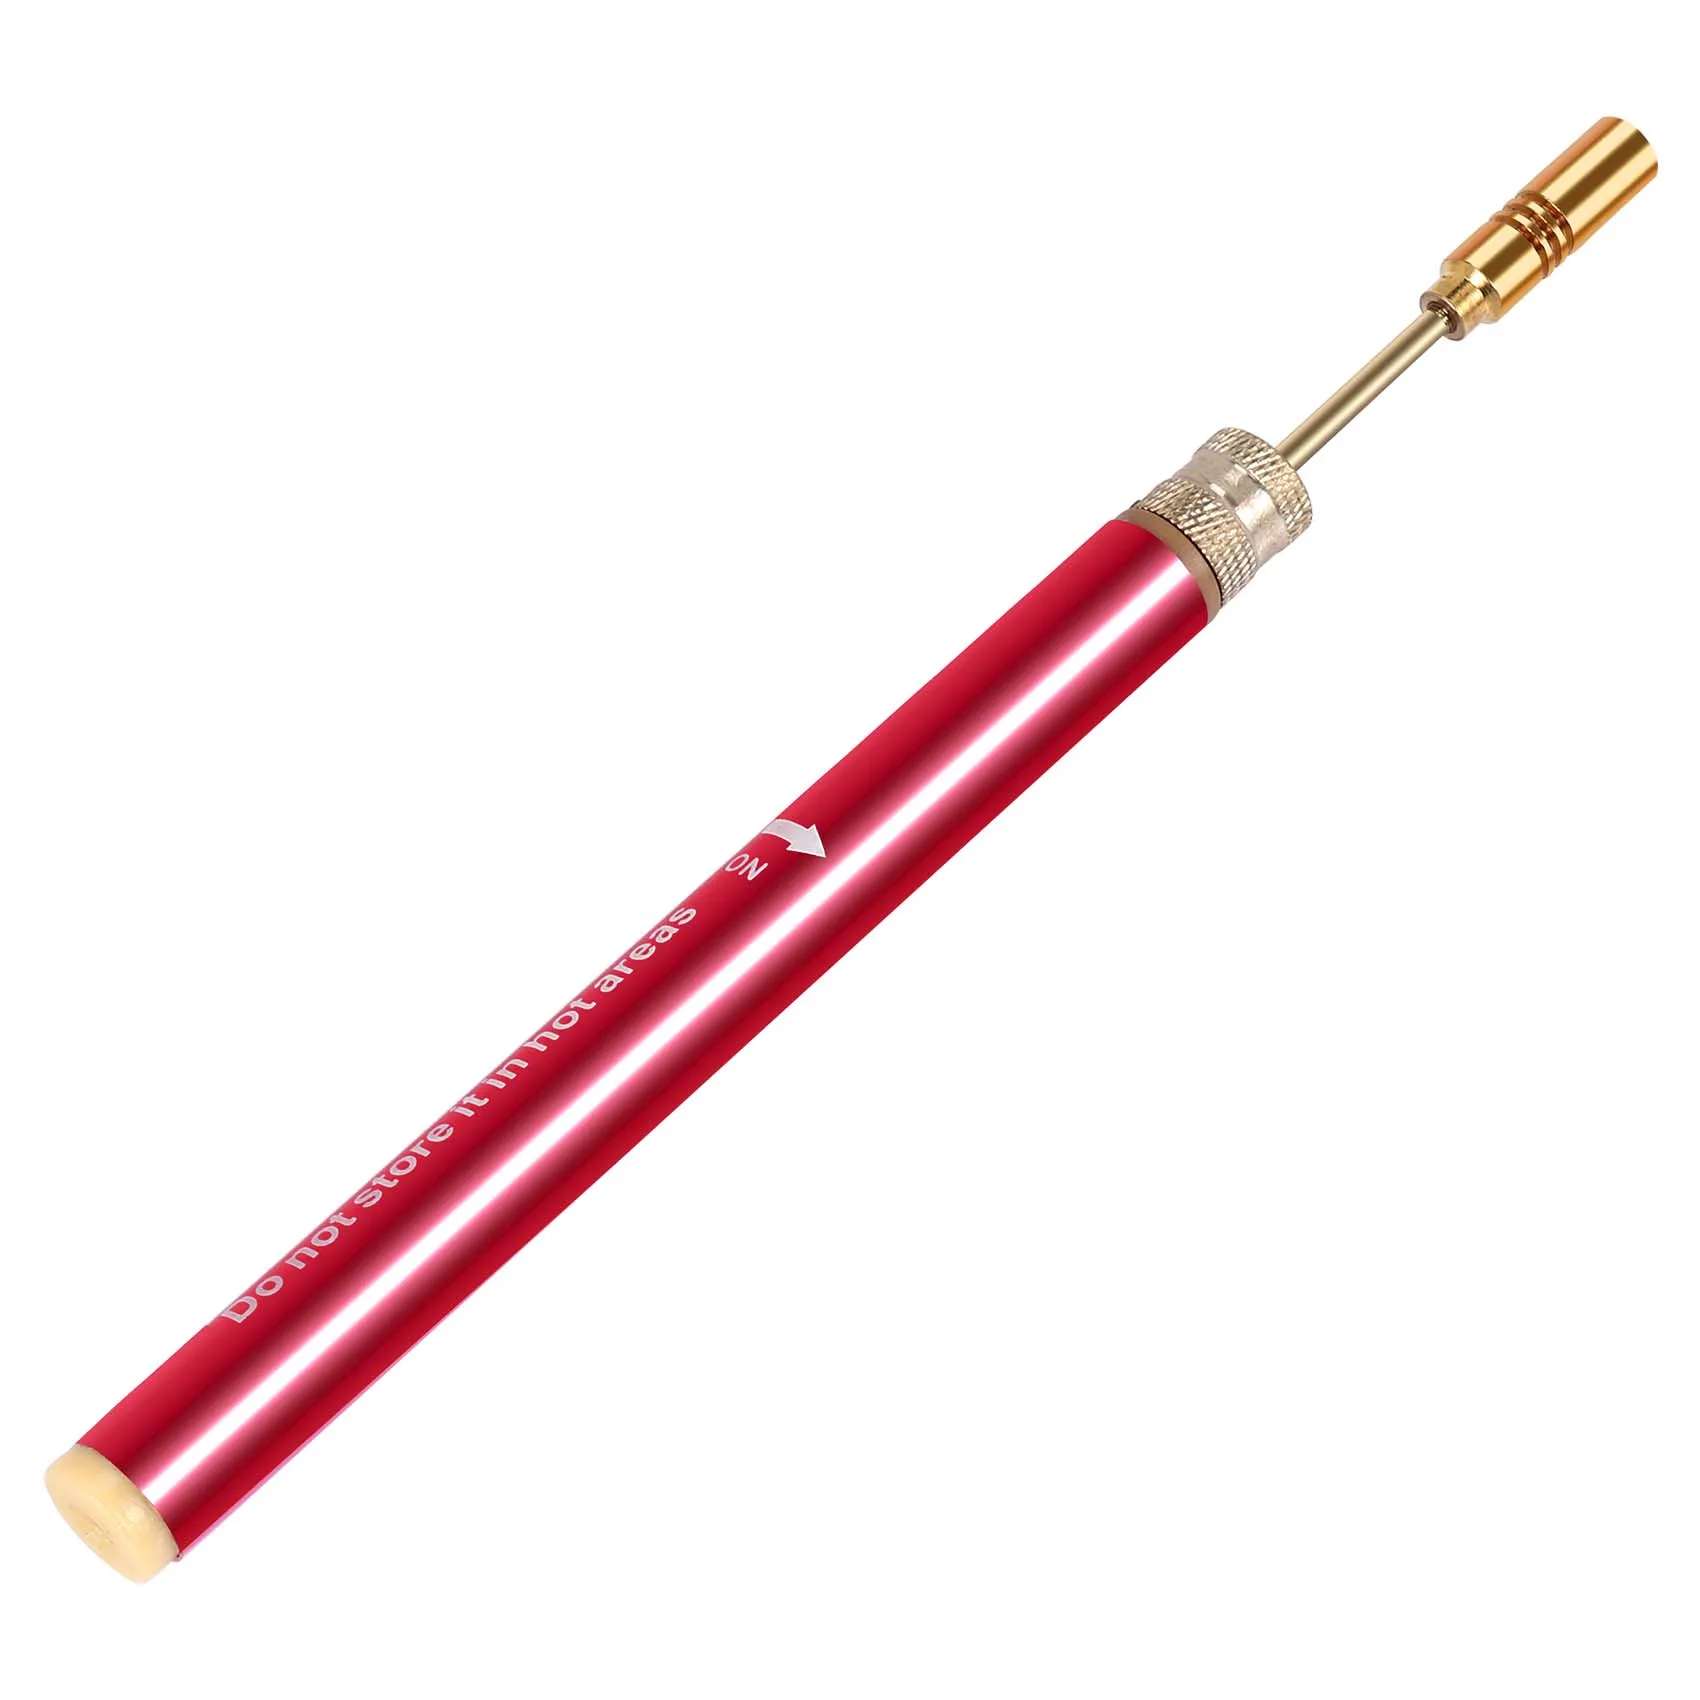 

Портативная Сварочная горелка Газовый инструмент, мини-паяльник, беспроводная сварочная ручка, горелка для плавки/горячей резки